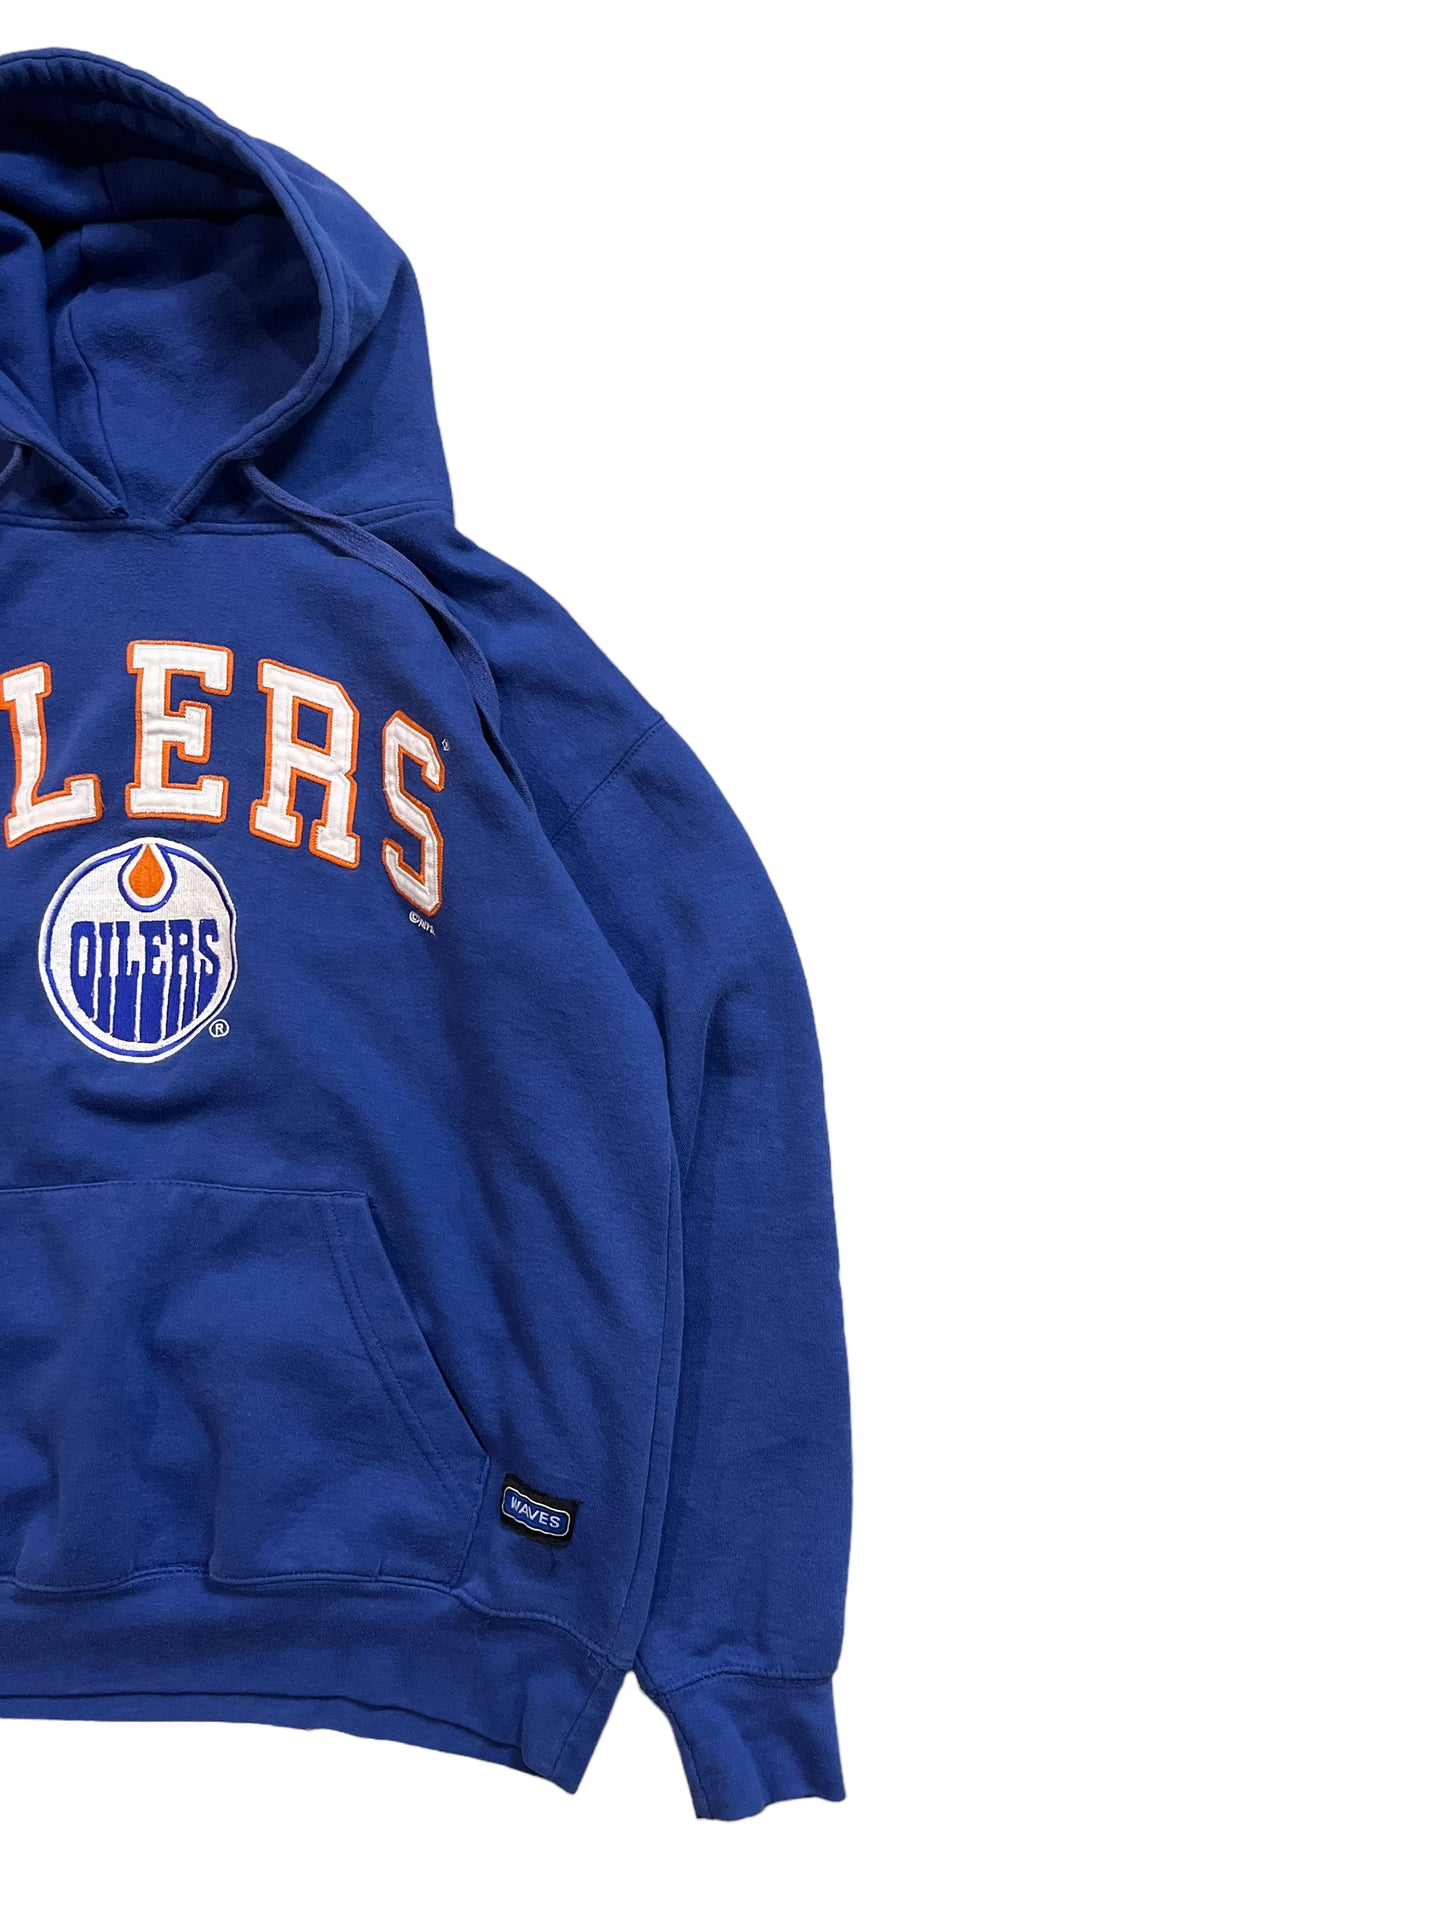 Vintage Edmonton Oilers Hoodie